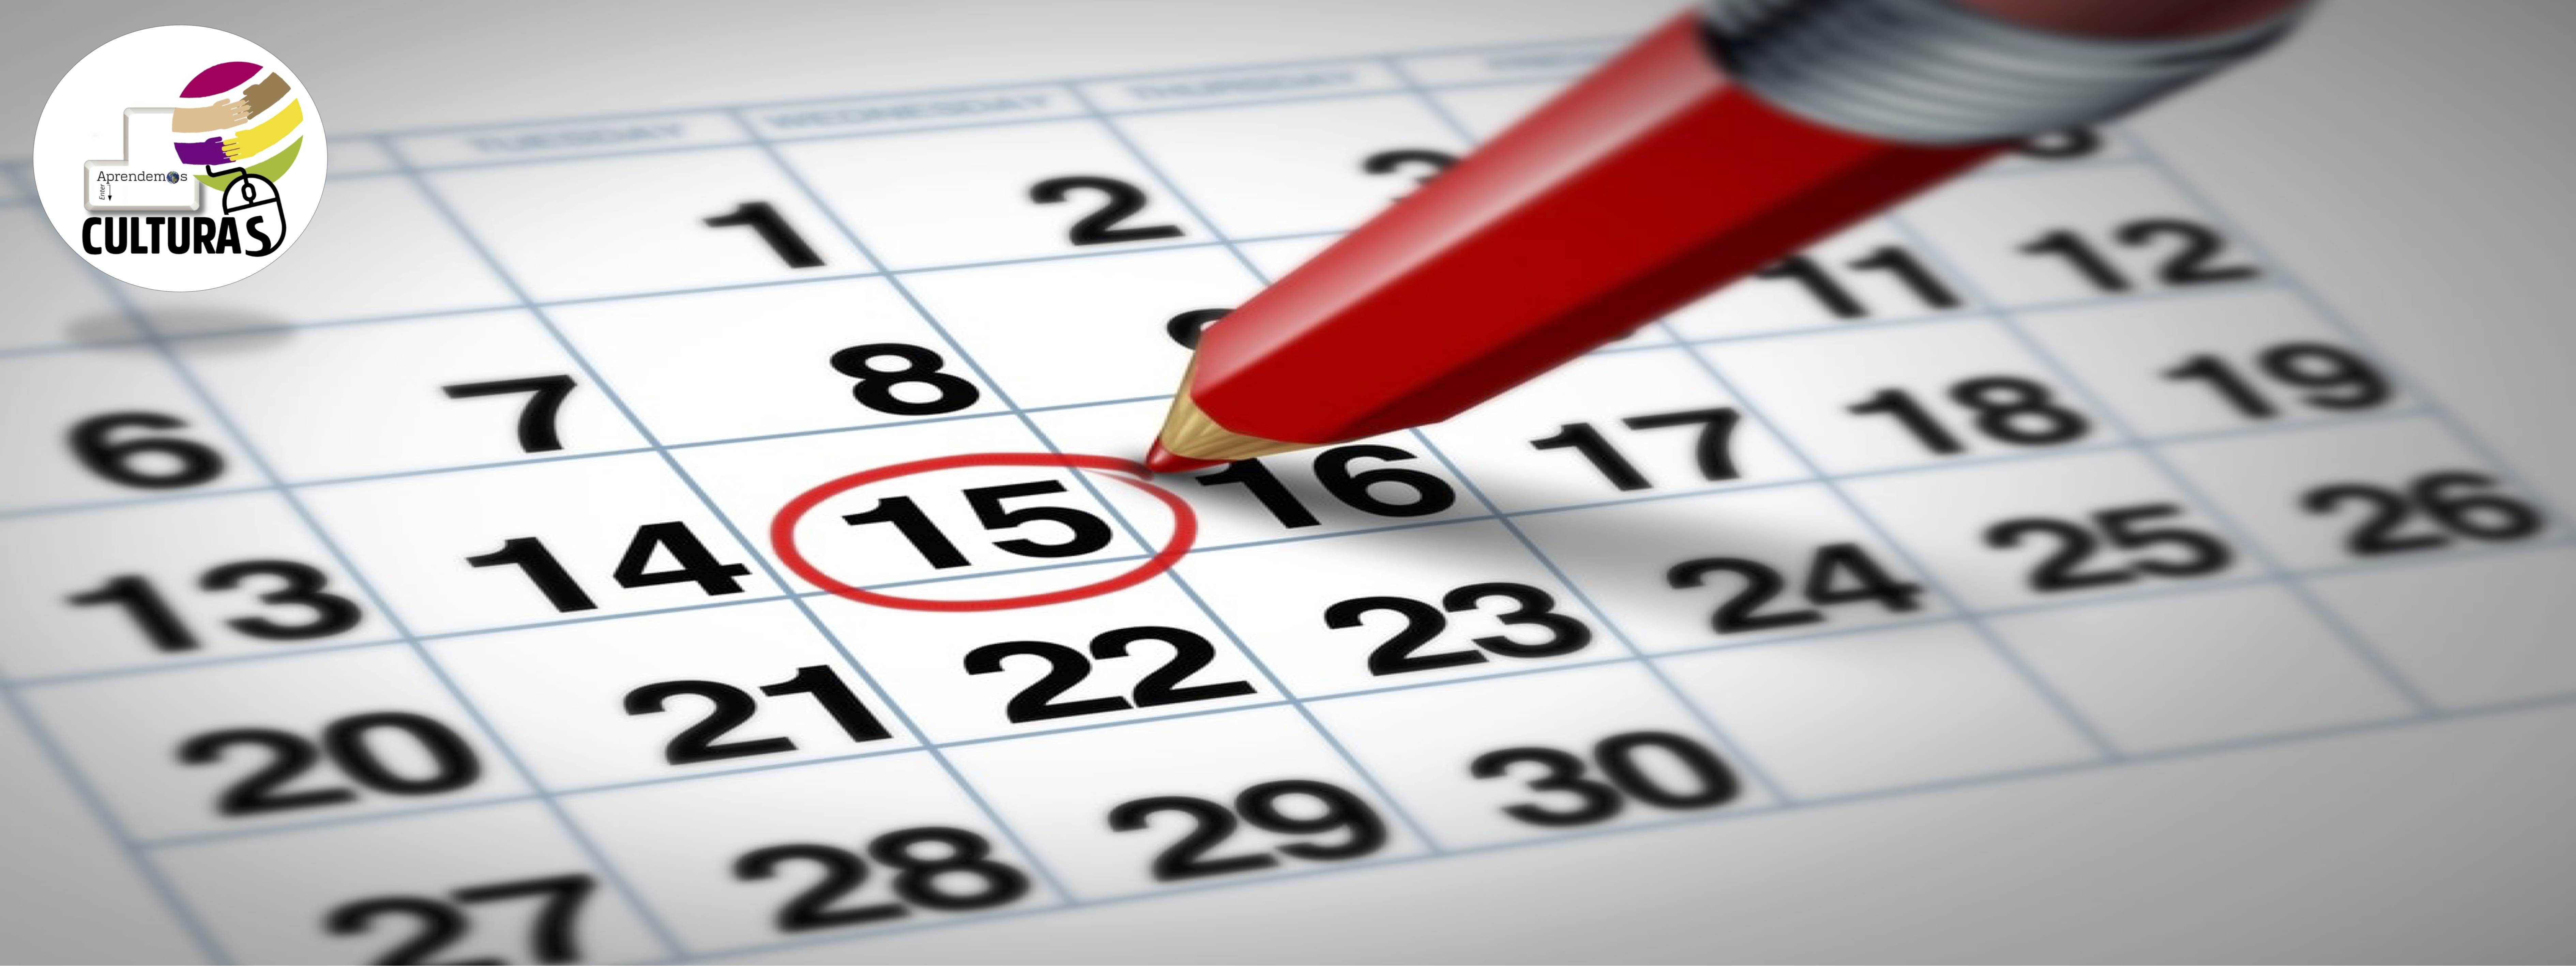 Calendario del mes con el día 15 señalado